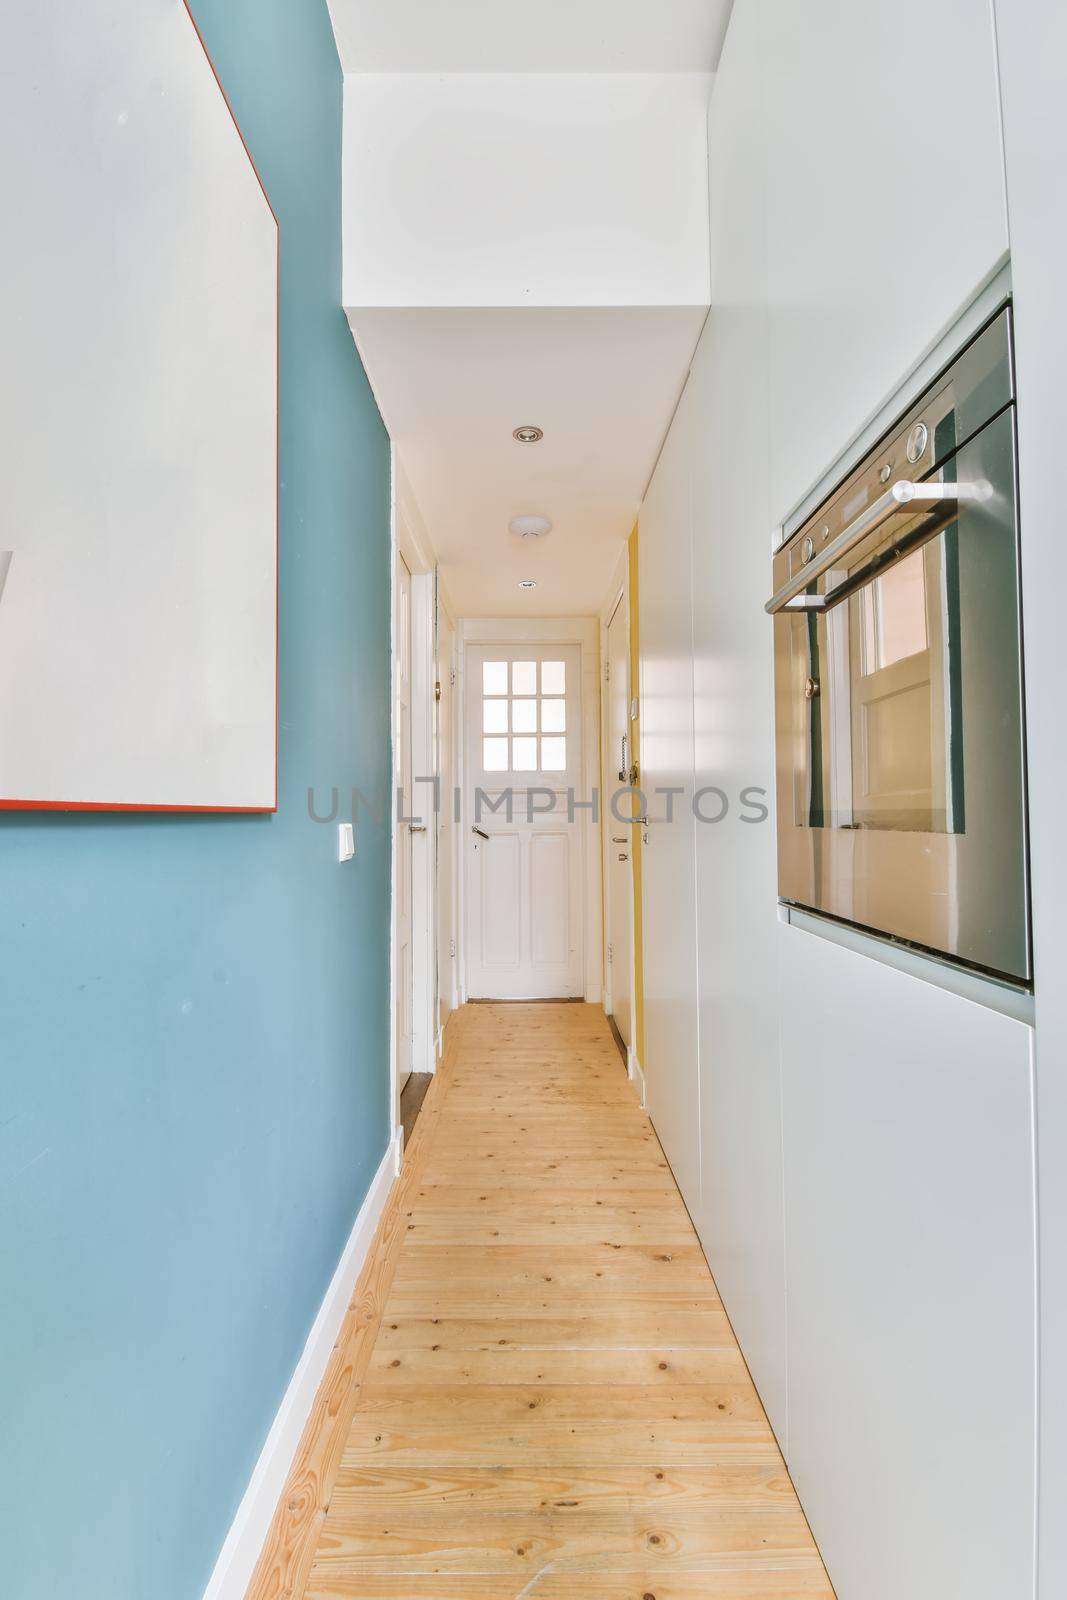 Designed in a minimalistic style cozy corridor